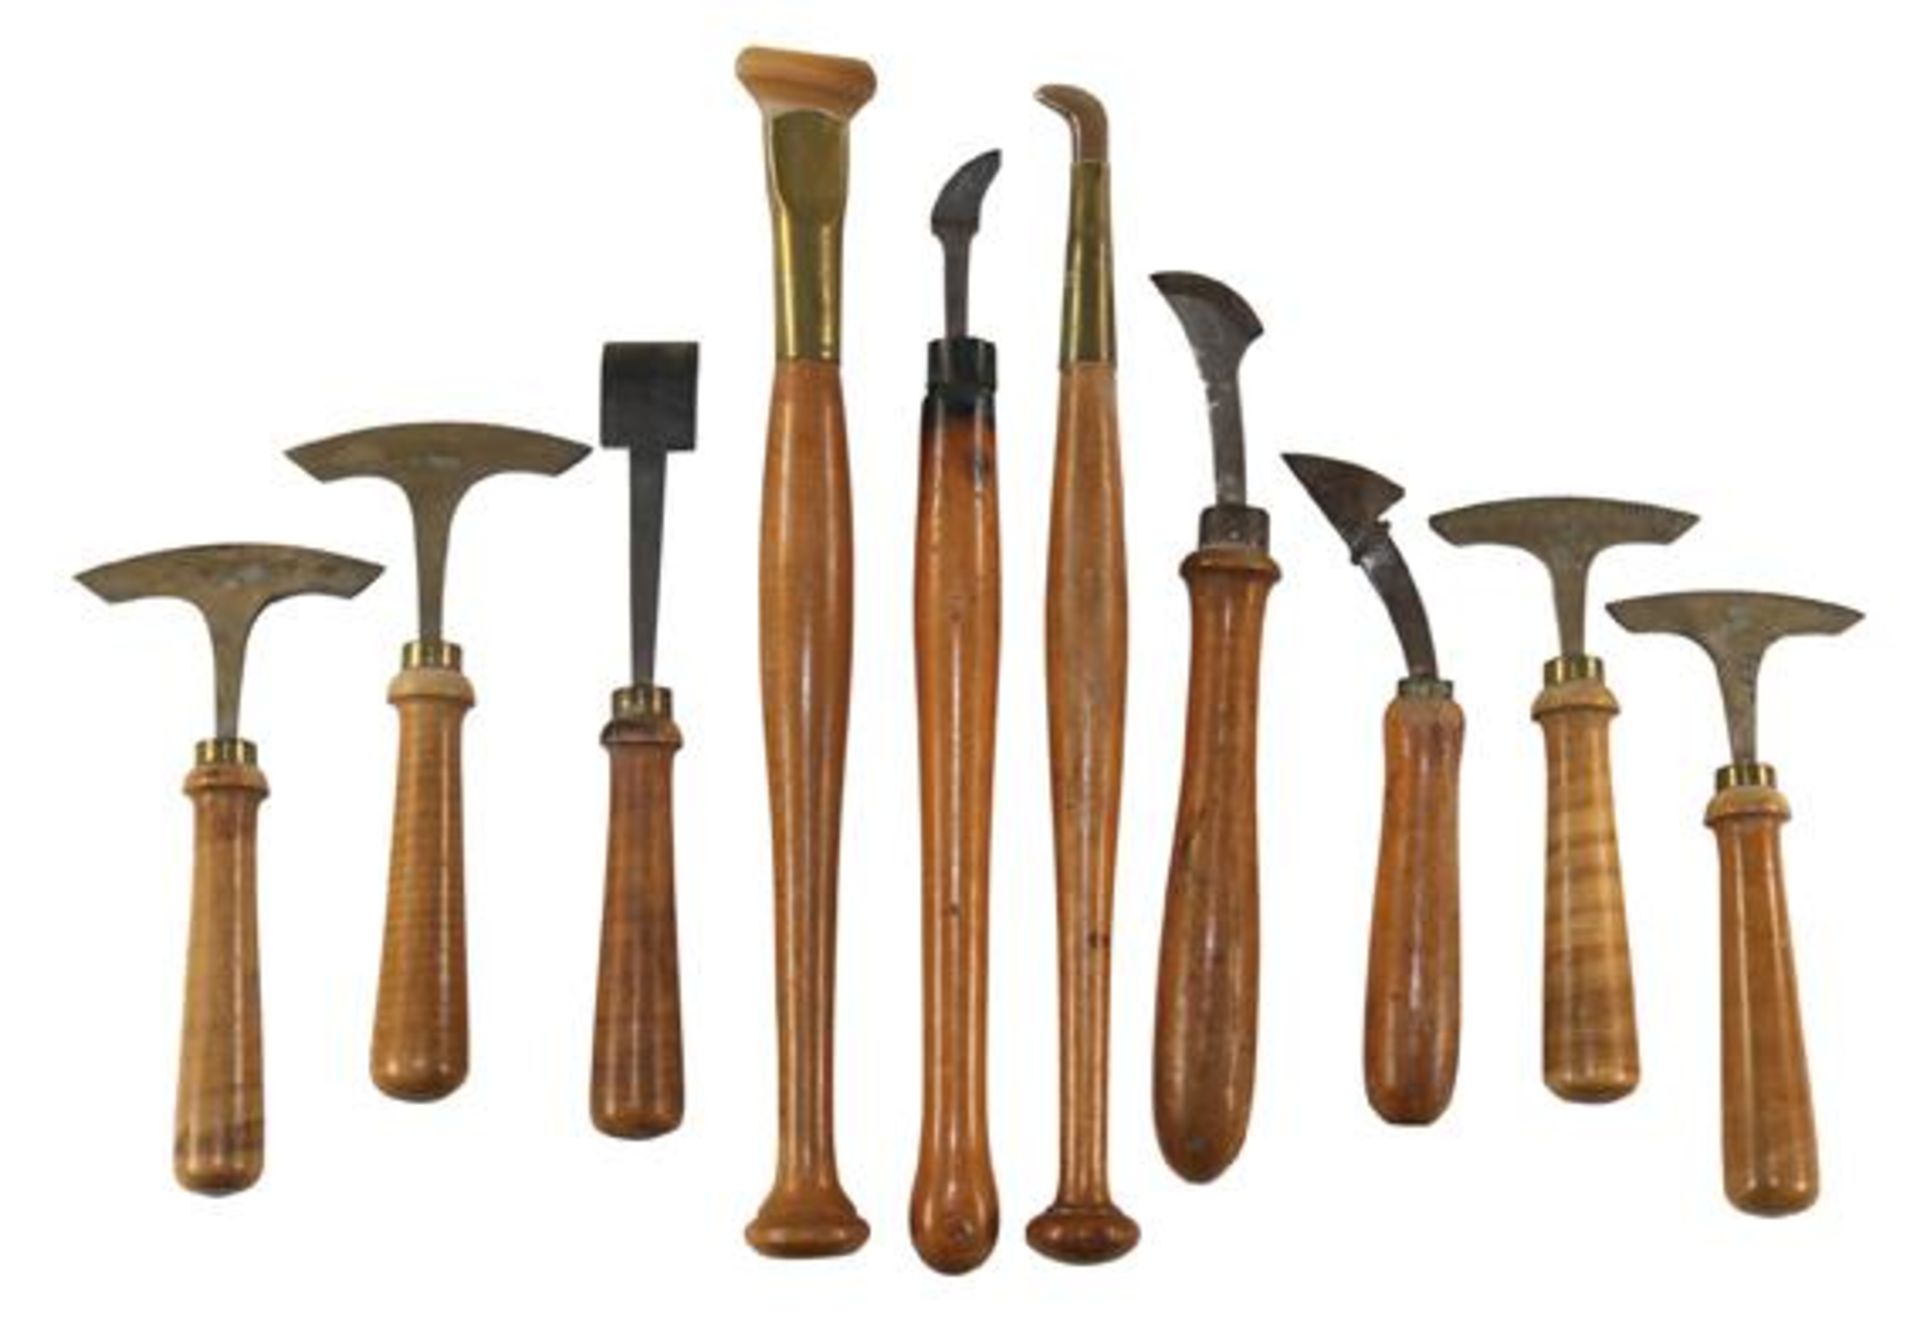 Buchbinder-Werkzeug.15 Werkzeuge zum Handvergolden bestehend in 5 Stempeln (Dornemann & Co.), 4